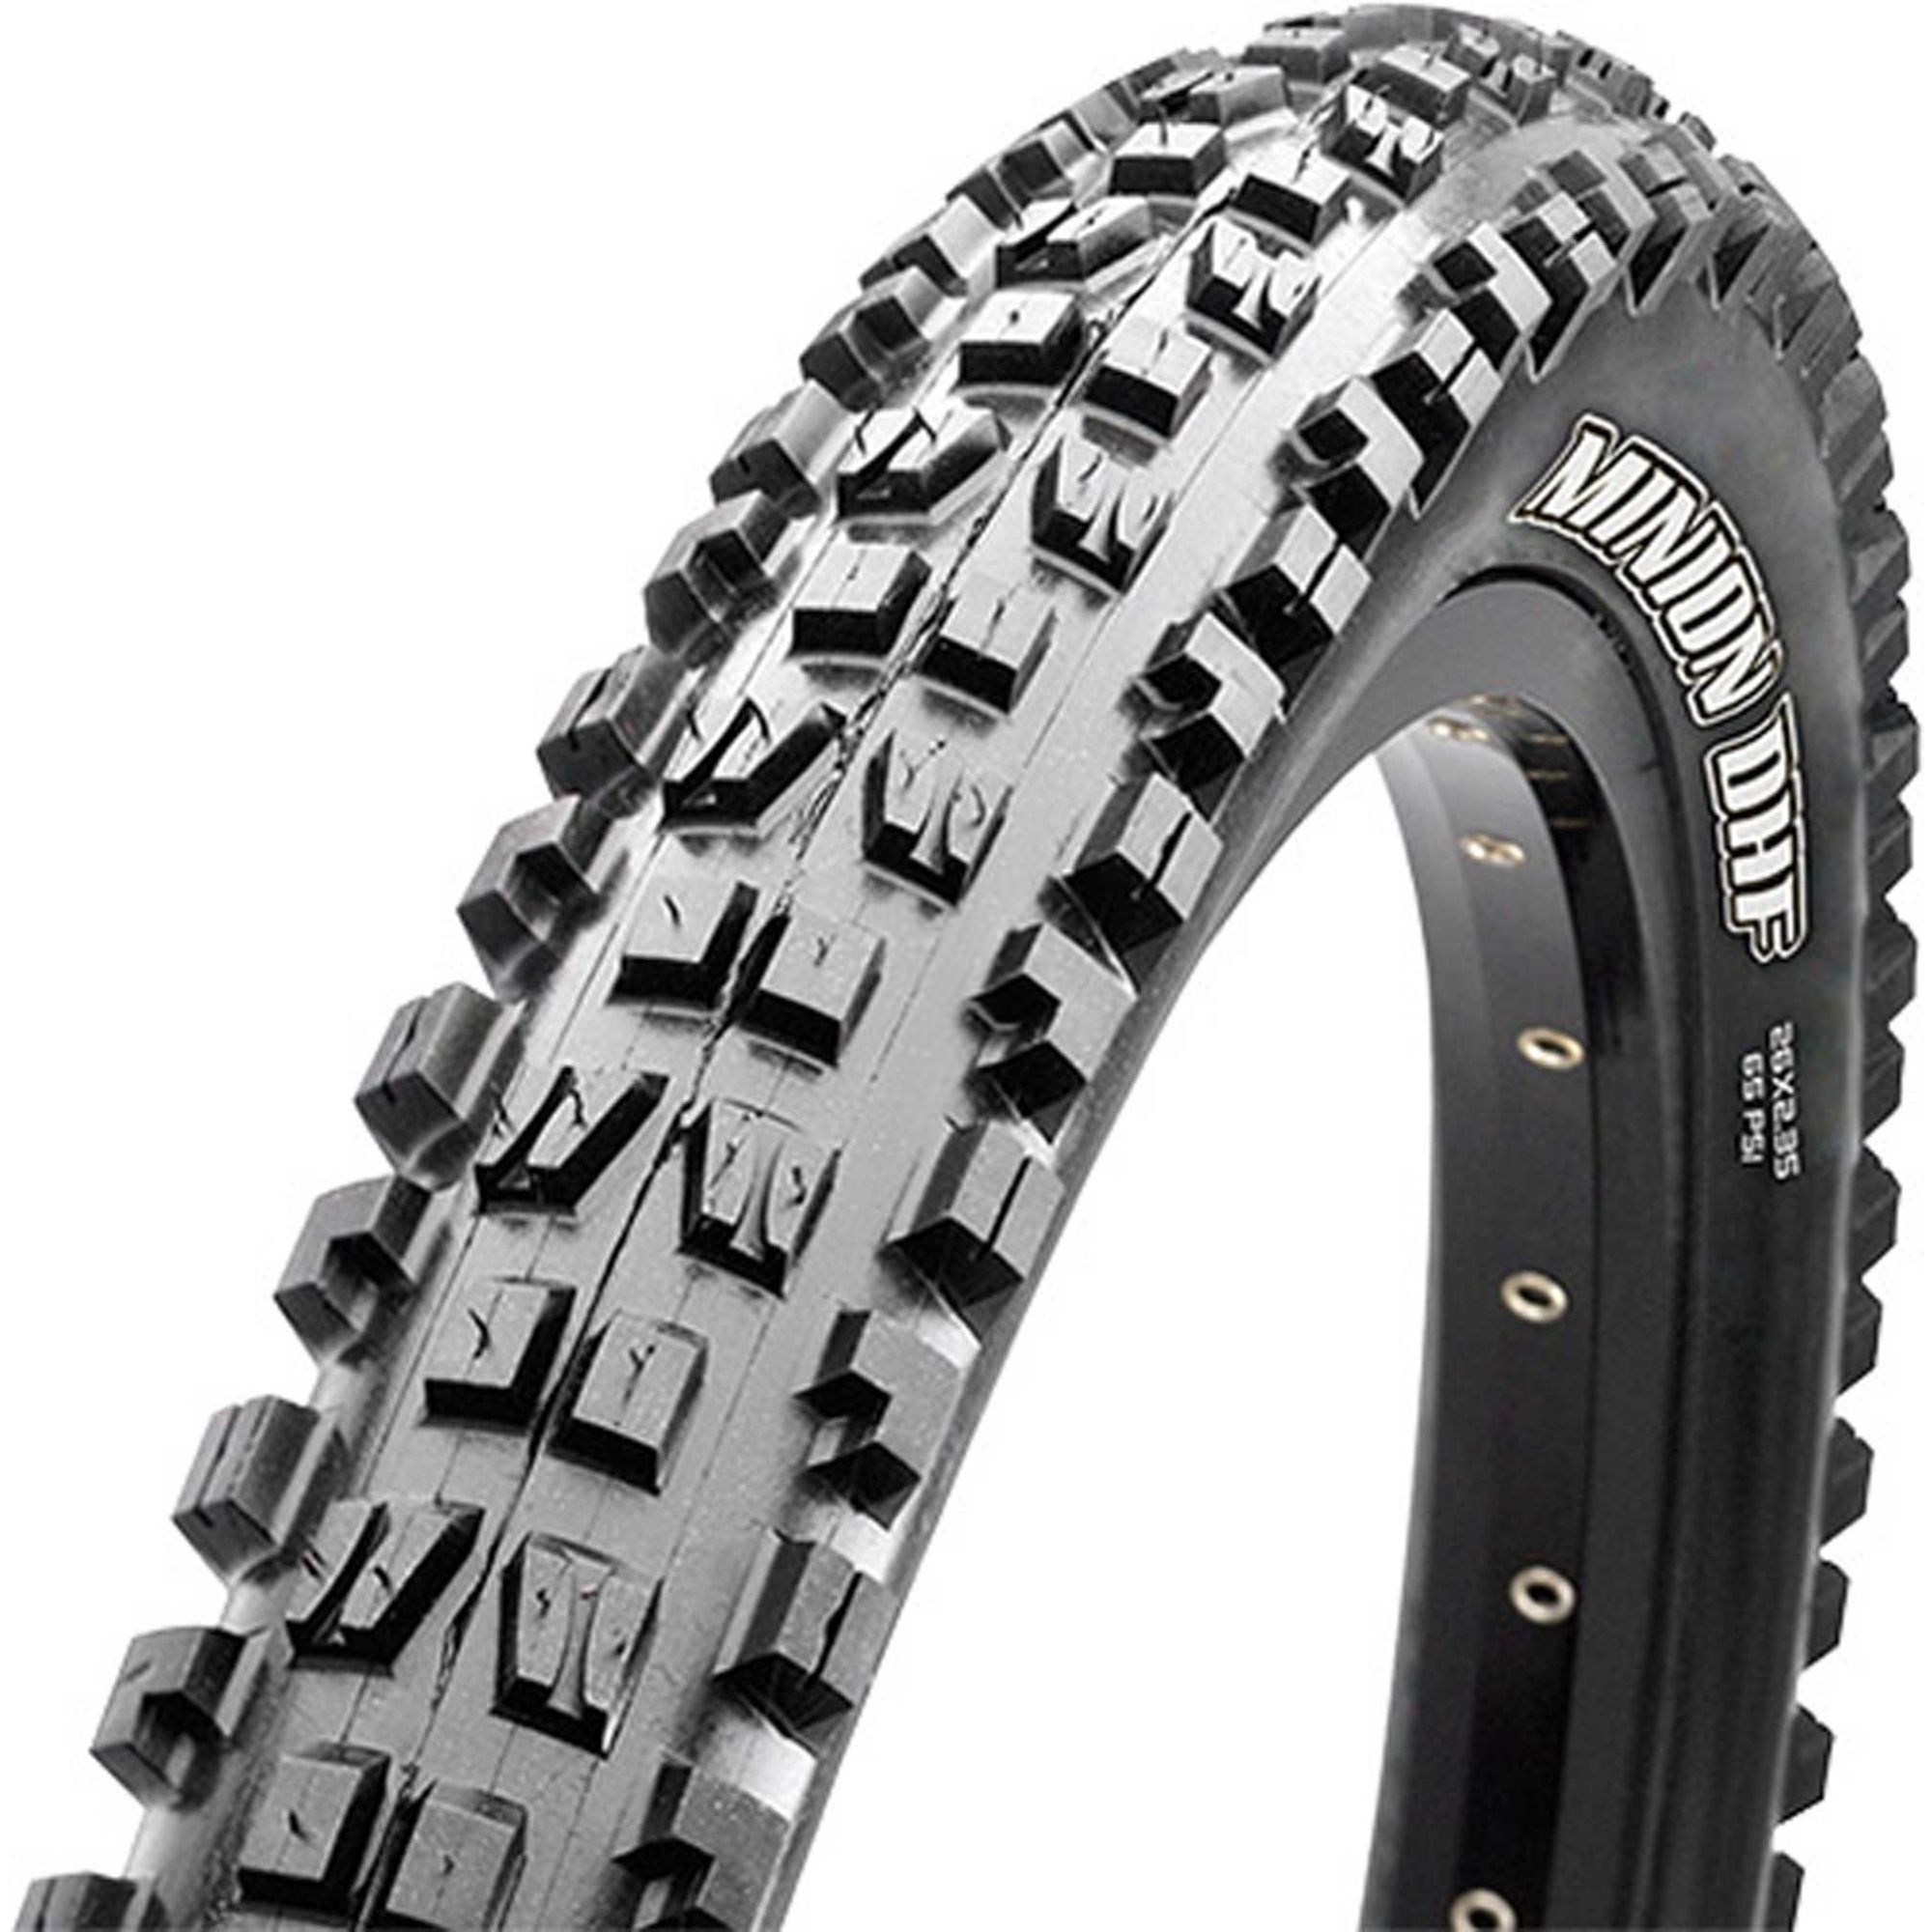 26 x 2.5 mountain bike tires